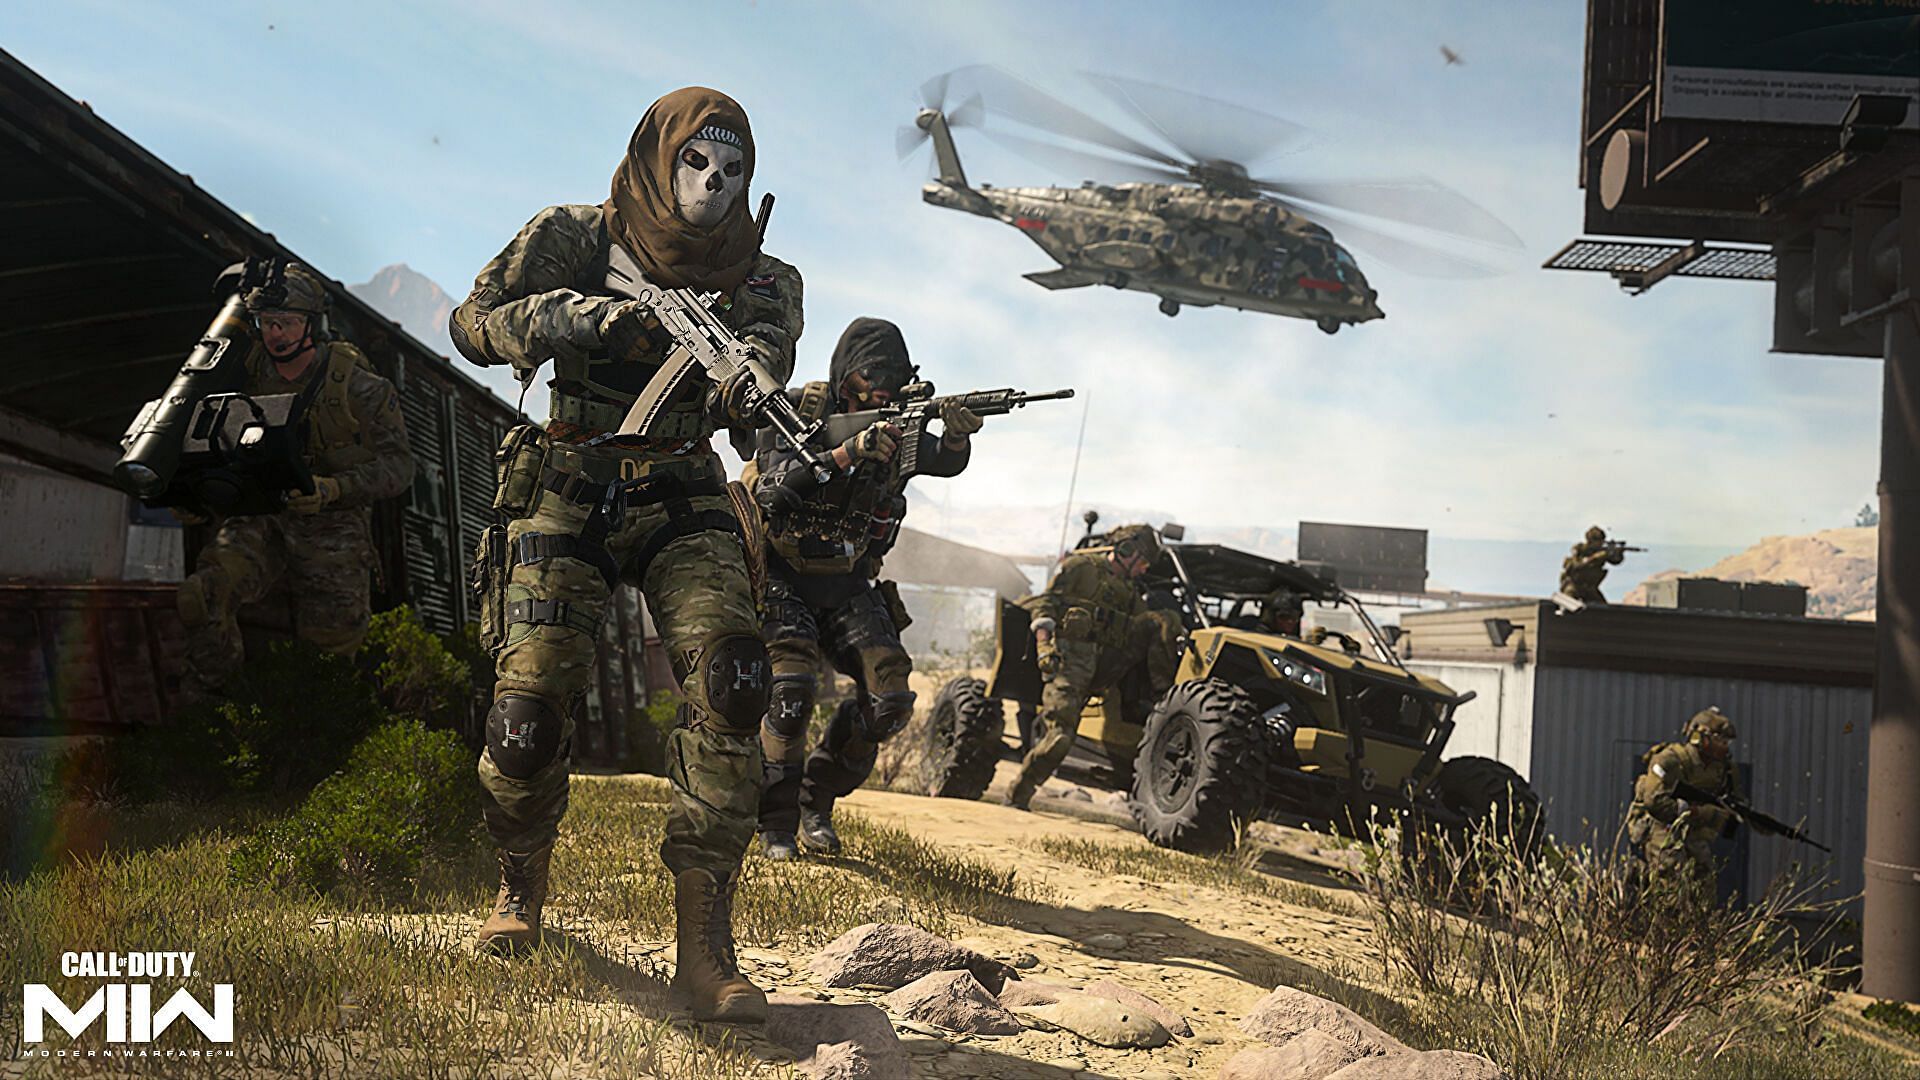 Call of Duty Modern Warfare 2 Team Deathmatch Gameplay 4K 